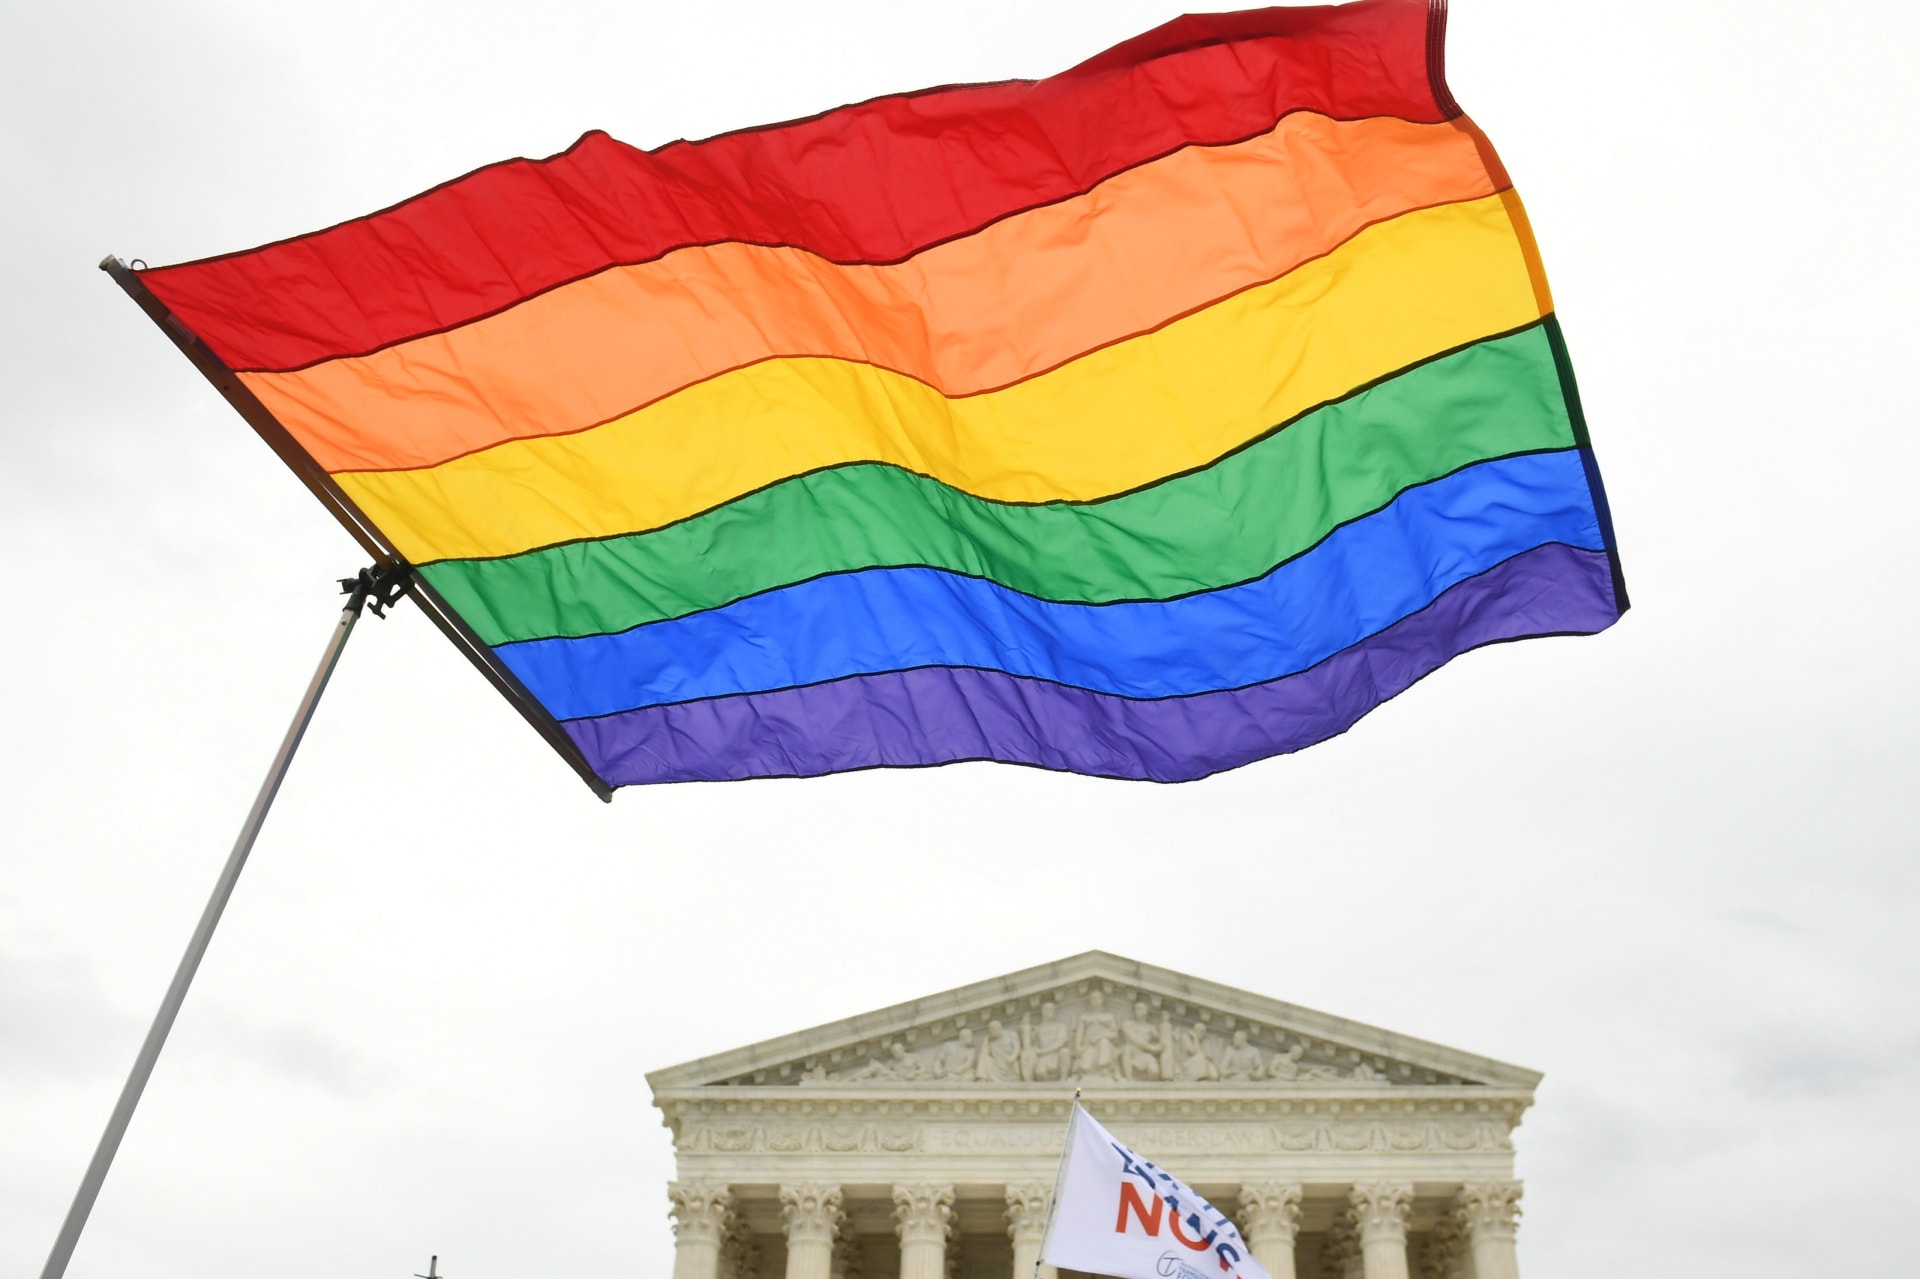 إدارة ترامب تتراجع عن حظر التمييز في الرعاية الصحية للمتحولين جنسيًا